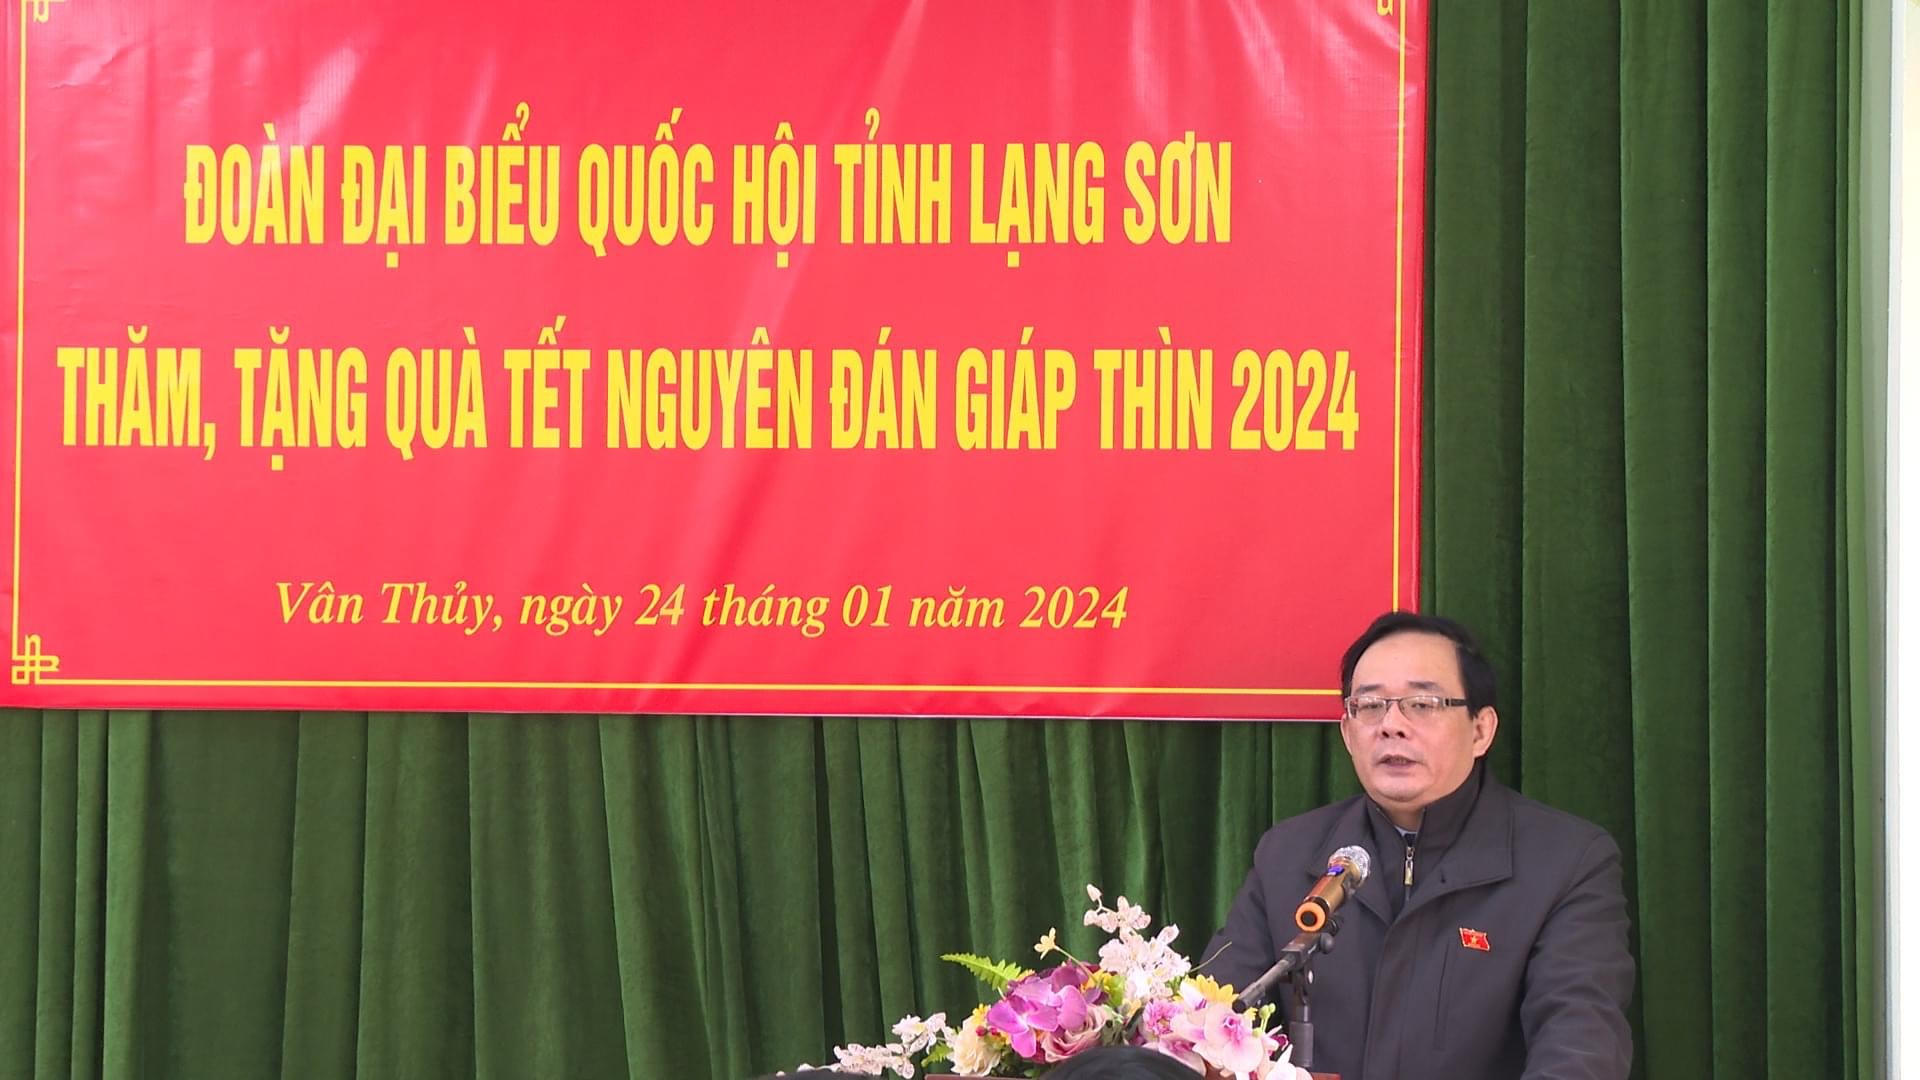 Đồng chí Triệu Quang Huy, Tỉnh uỷ viên, Phó Trưởng Đoàn chuyên trách Đoàn ĐBQH tỉnh Lạng Sơn phát biểu tại chương trình